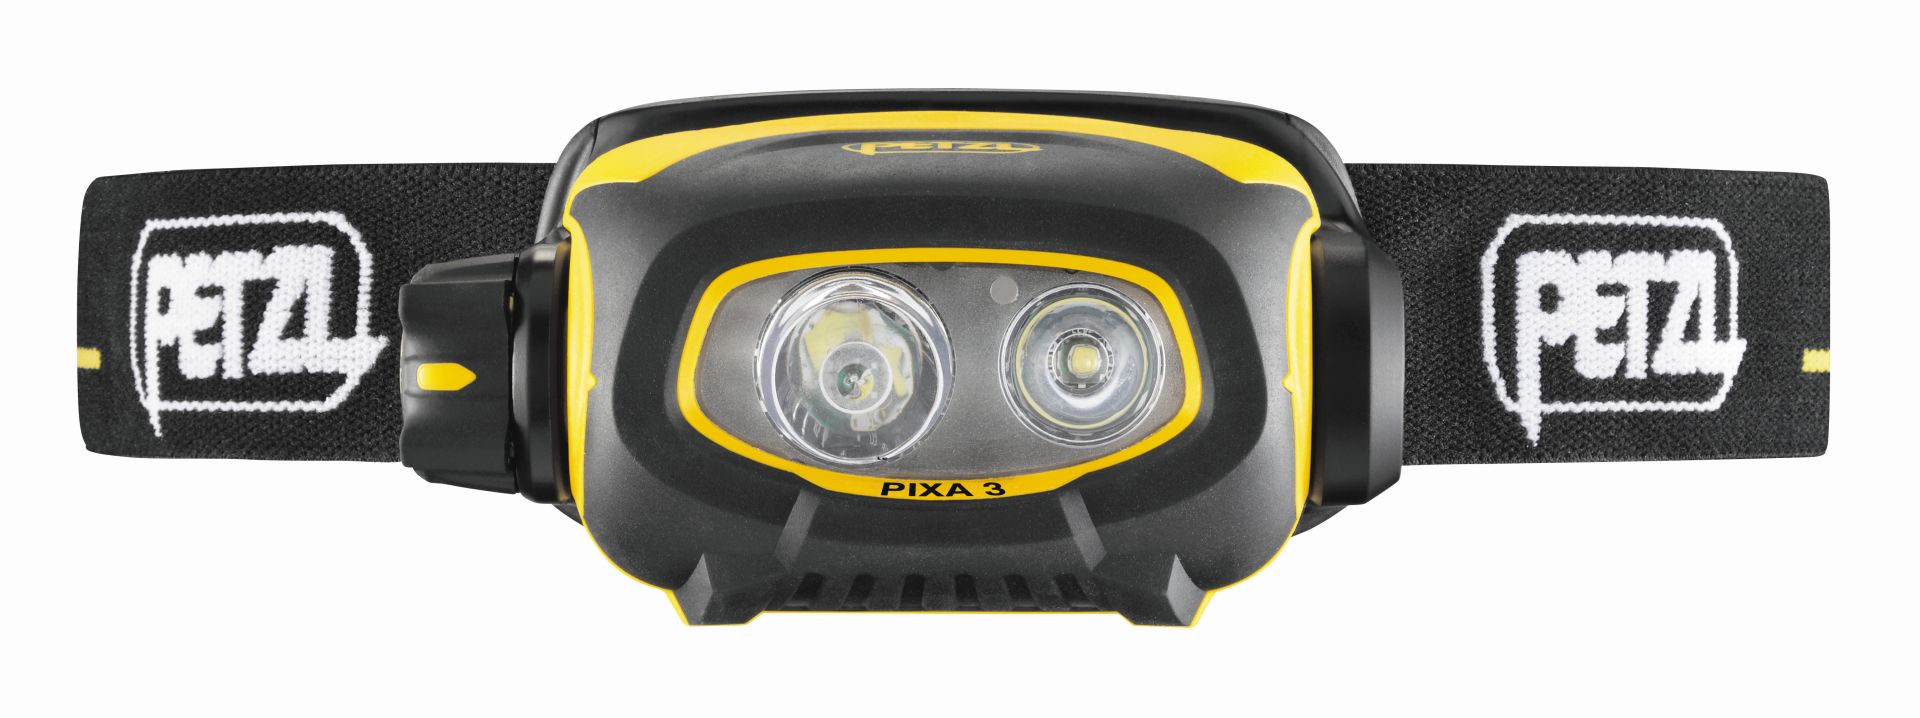 Stirnlampe PIXA 3 ATEX 100 Lm